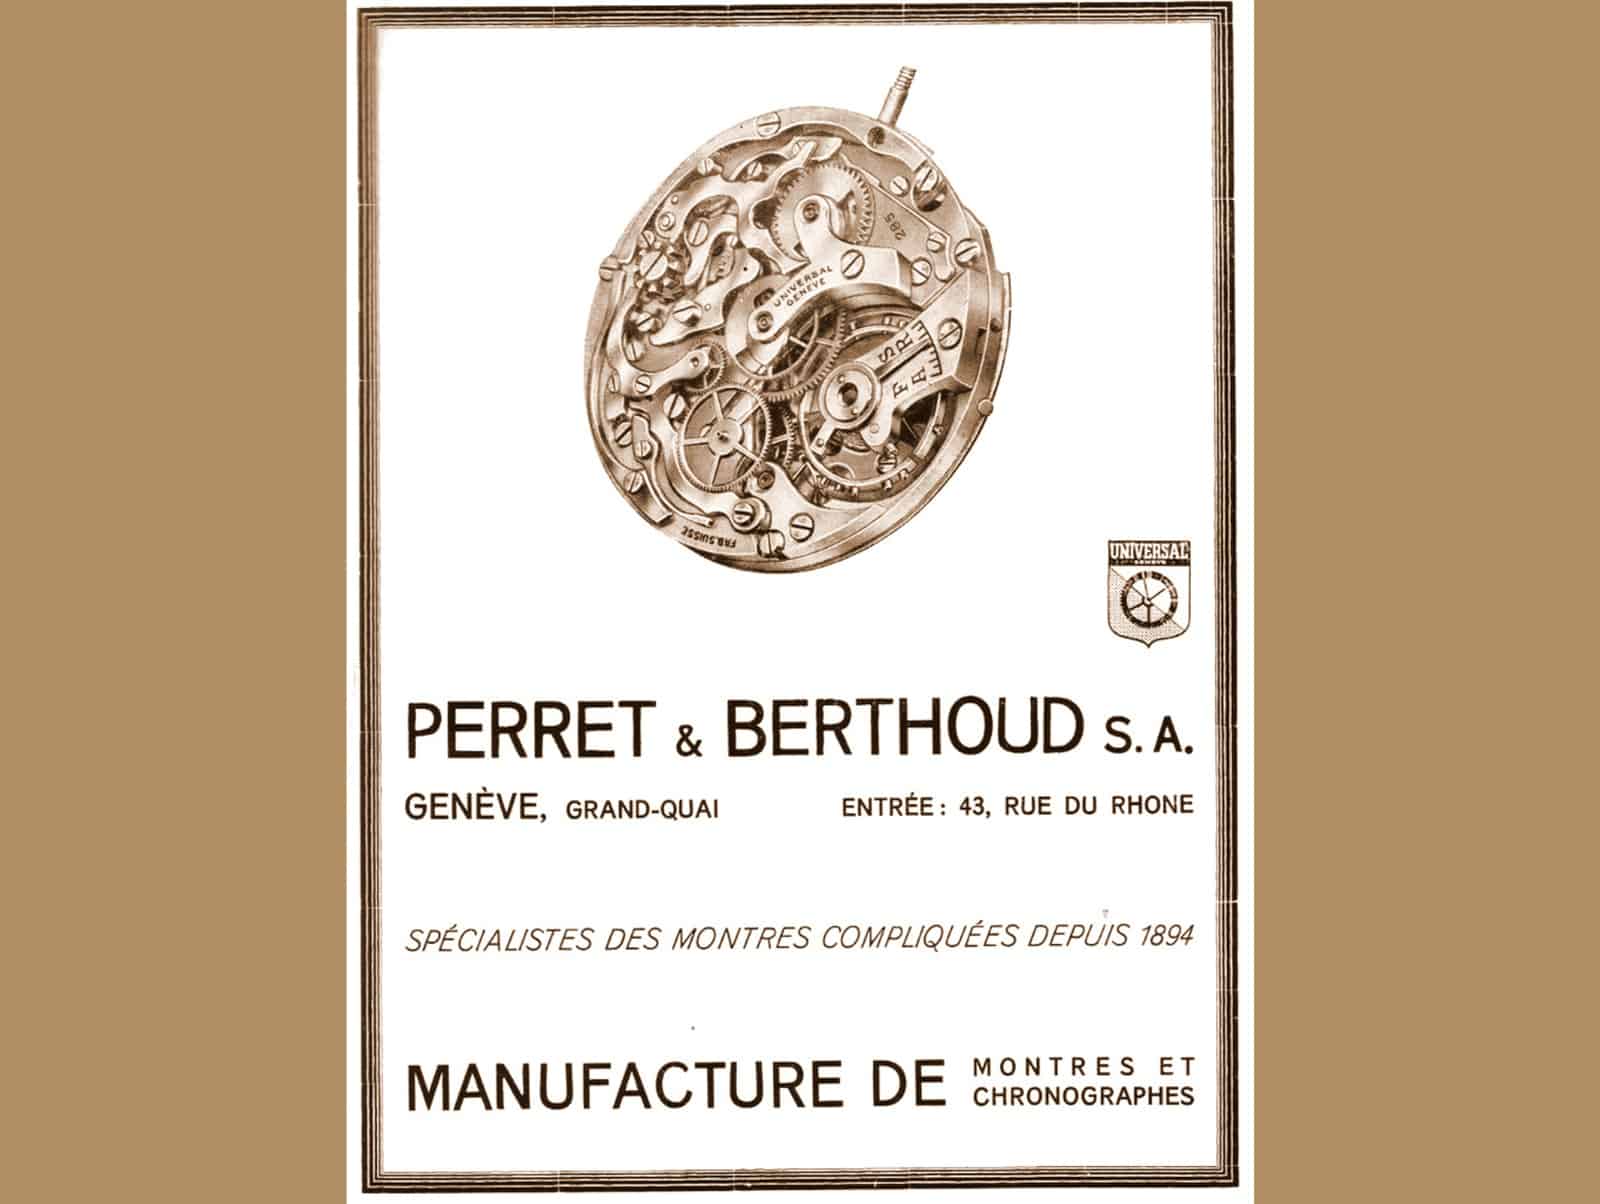 Anzeige Perret & Berthoud Universal 1930-er Jahre